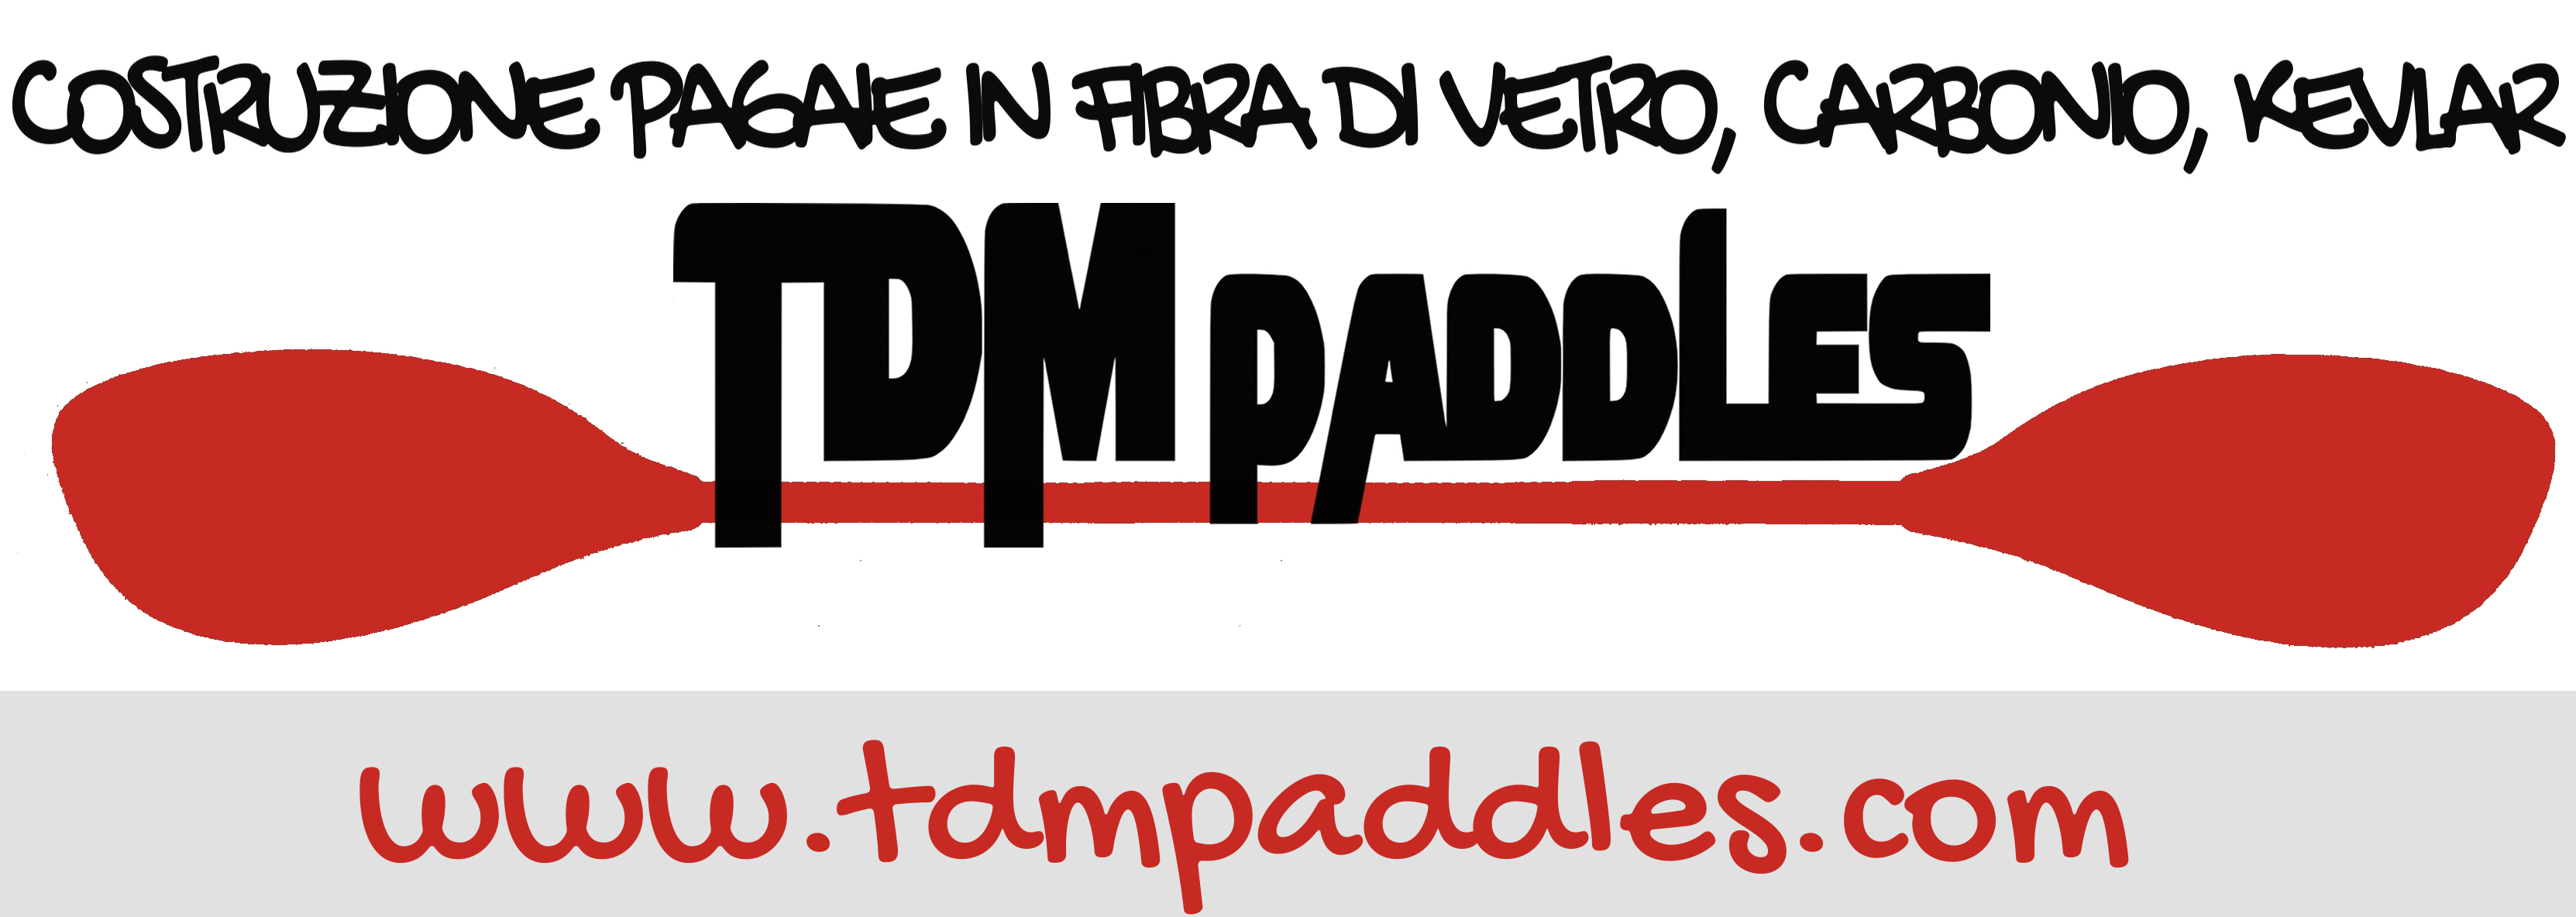 tdm_paddles_banner1.jpg